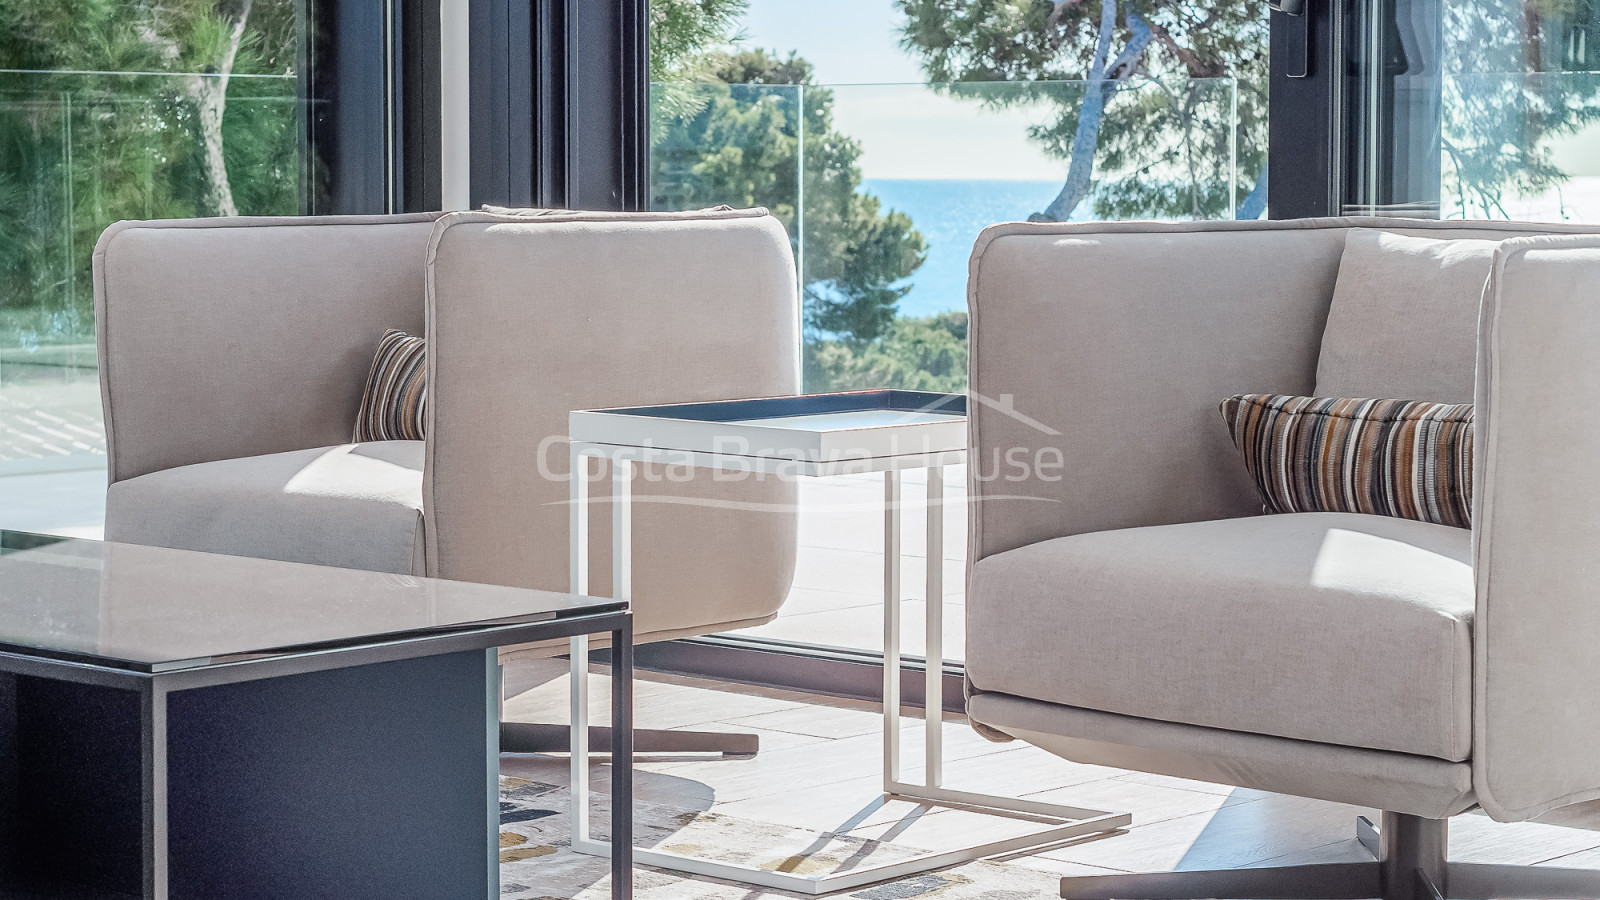 Villa de luxe moderne avec vue sur la mer à Platja d'Aro, Costa Brava